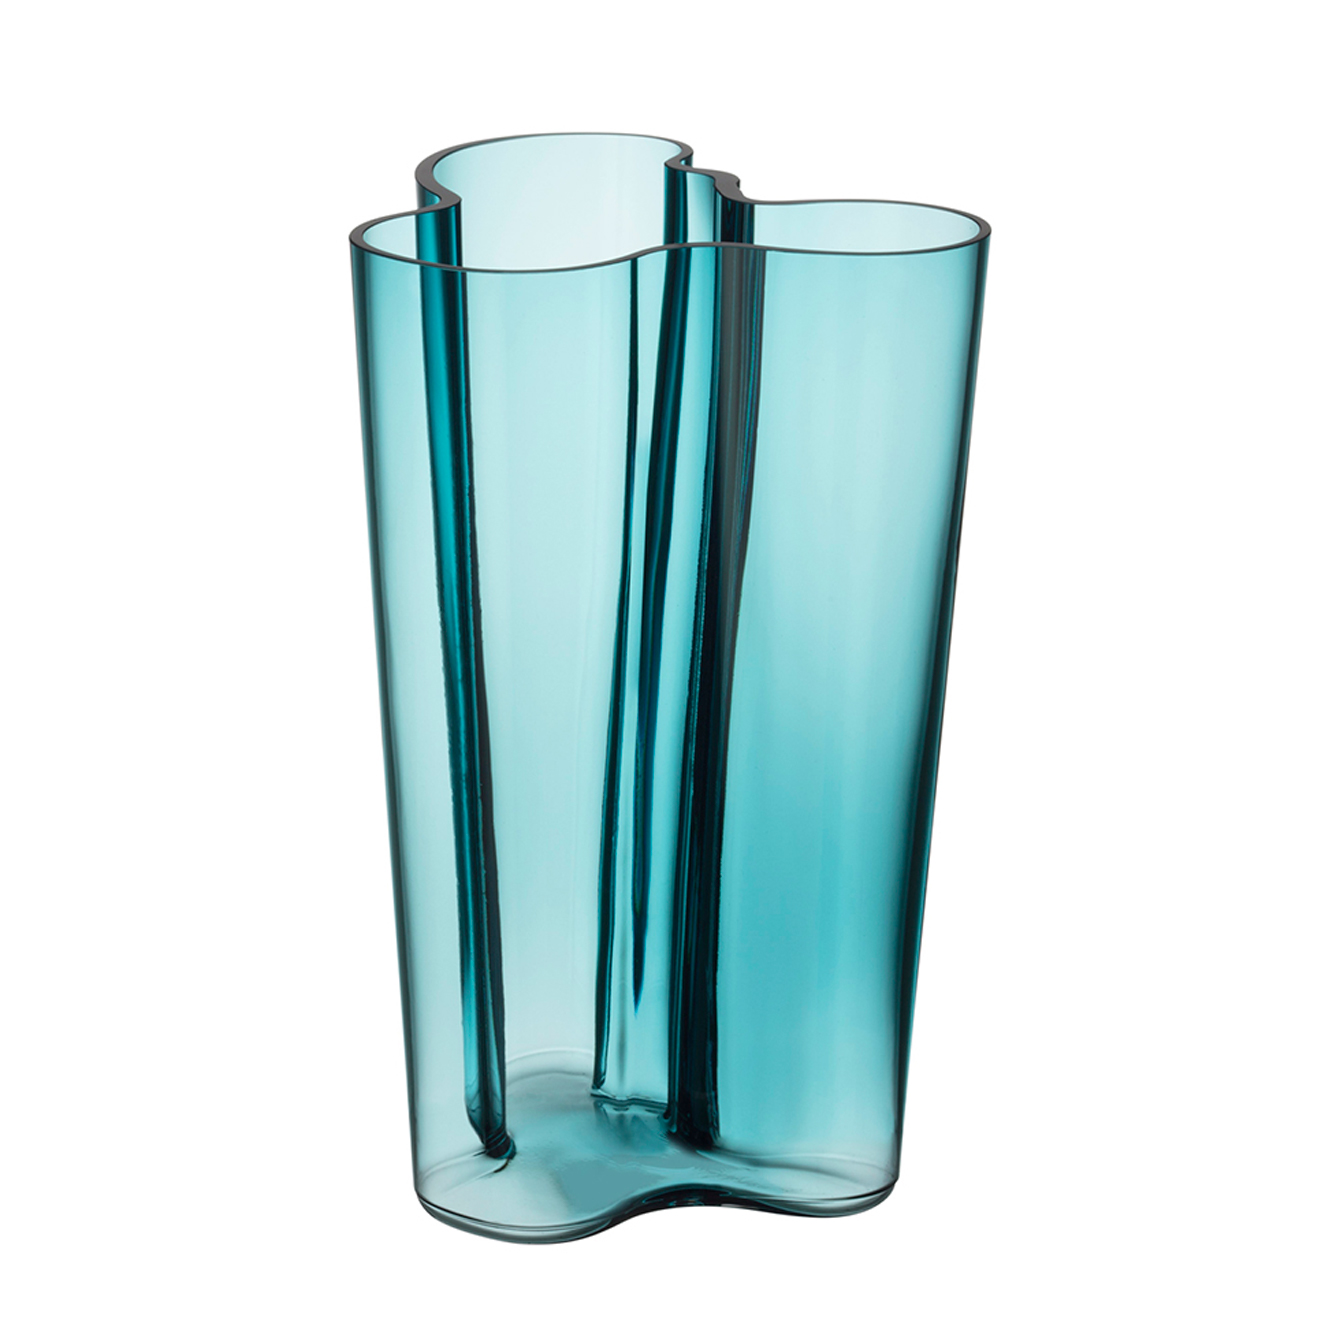 New Iittala Alvar Aalto Vase Sea Blue 25cm Ebay